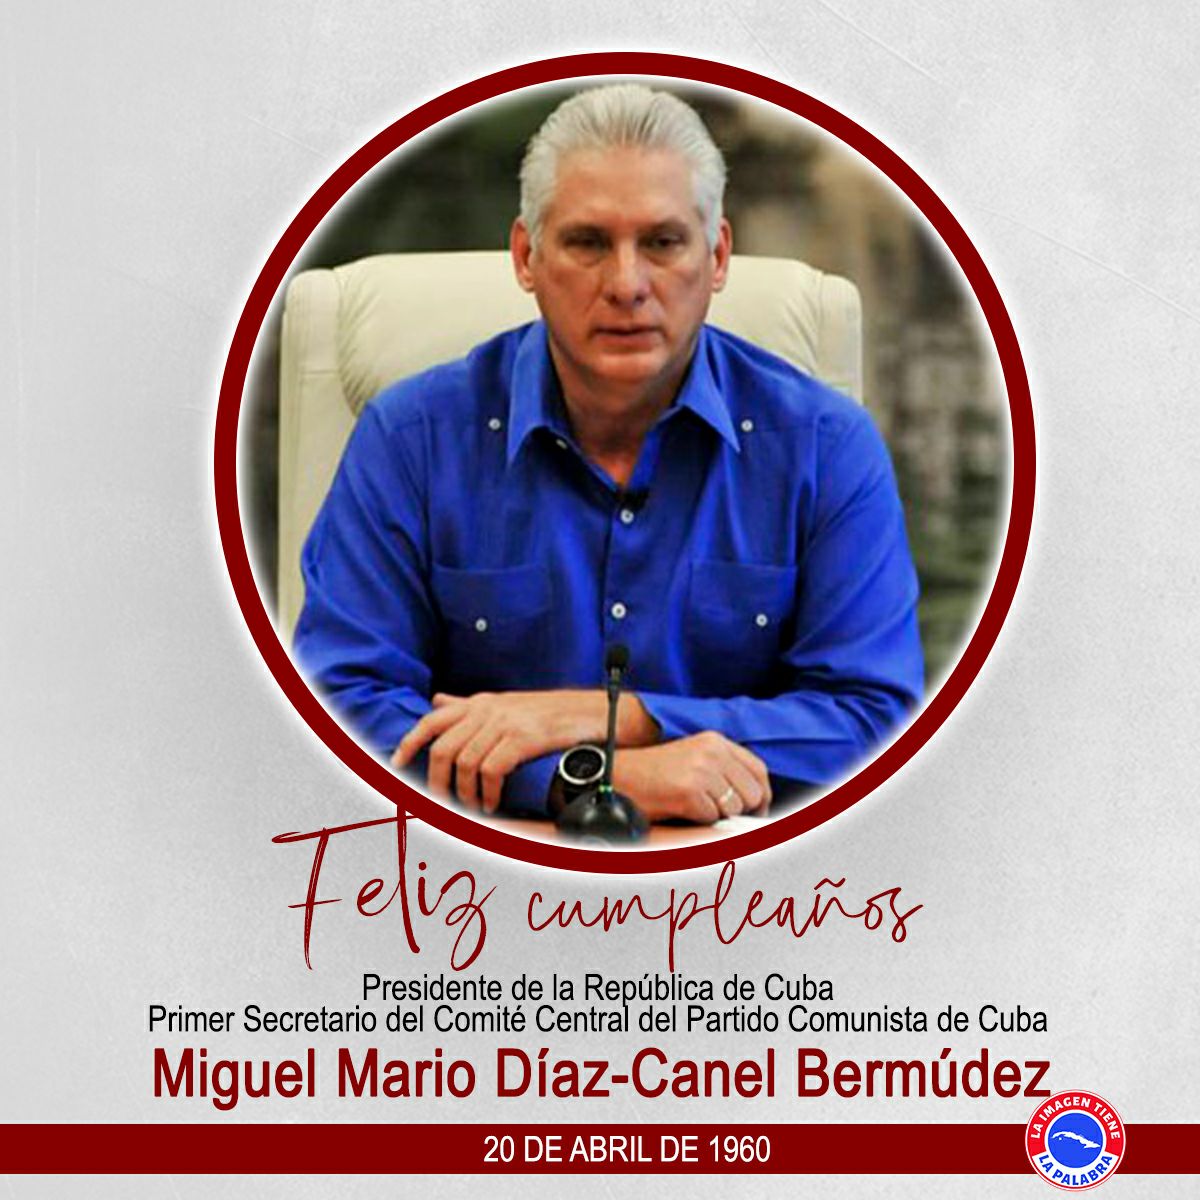 Muchas felicidades le deseamos Presidente,que tenga un bonito día. #SanctiSpíritusEnMarcha #Taguasco #YoSigoAMiPresidente